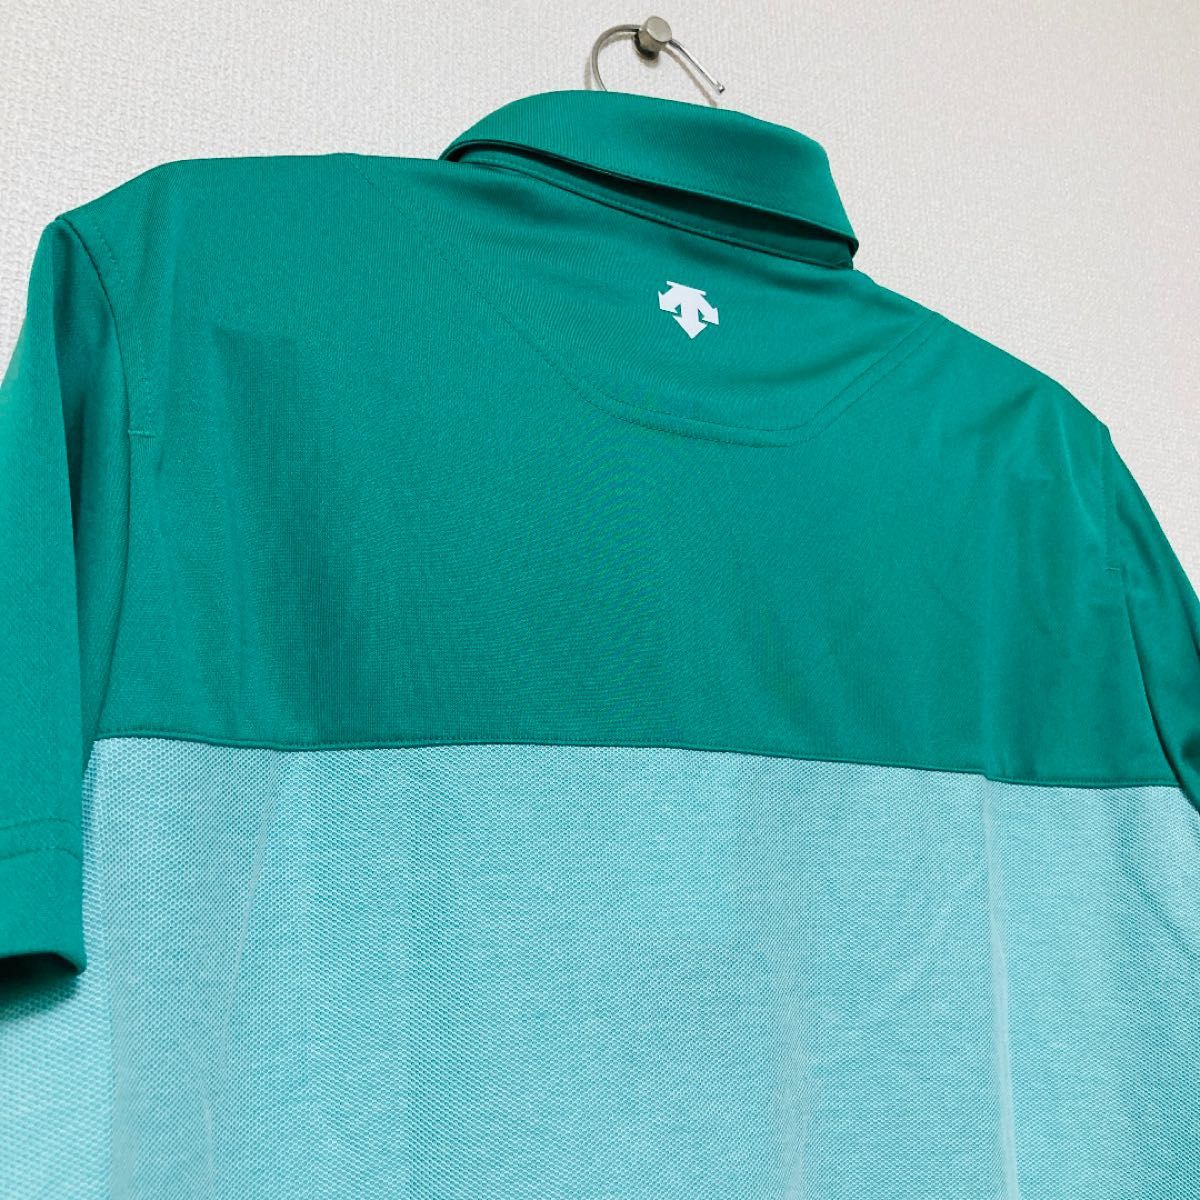 新品 スリクソン ゴルフウェア ポロシャツ メンズ グリーン 緑色 Mサイズ 松山英樹 マスターズ 速乾 爽やか  メッシュ